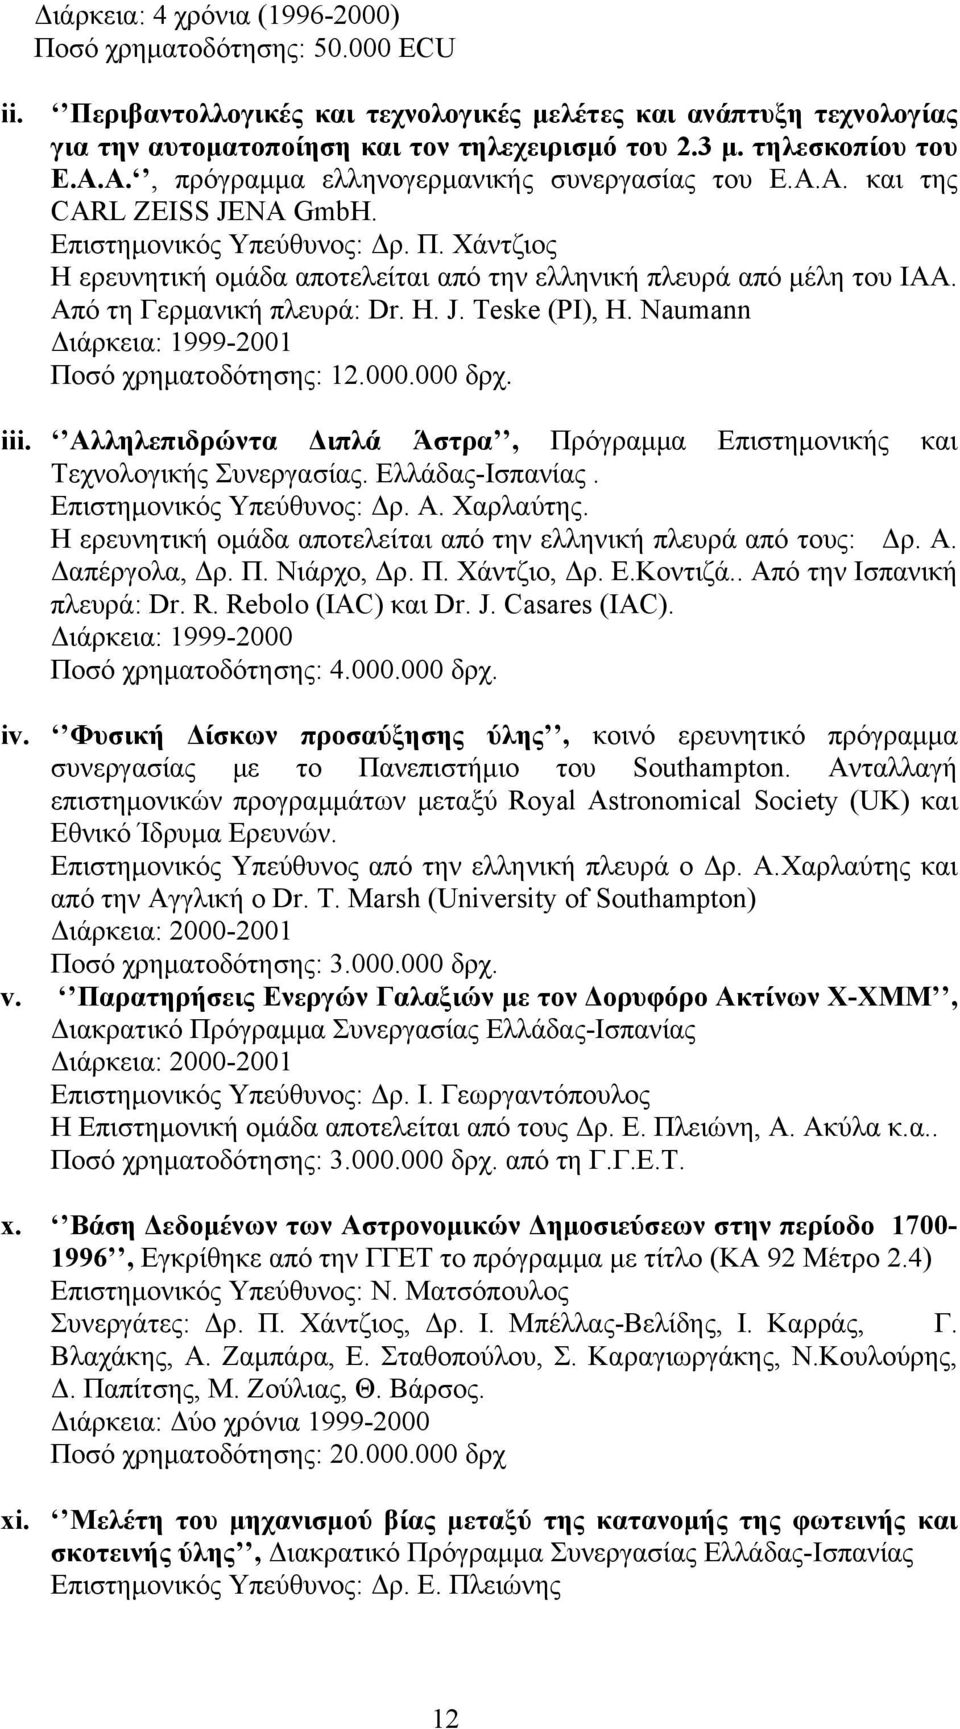 Χάντζιος Η ερευνητική ομάδα αποτελείται από την ελληνική πλευρά από μέλη του ΙAA. Από τη Γερμανική πλευρά: Dr. H. J. Teske (PI), H. Naumann Διάρκεια: 1999-2001 Ποσό χρηματοδότησης: 12.000.000 δρχ.